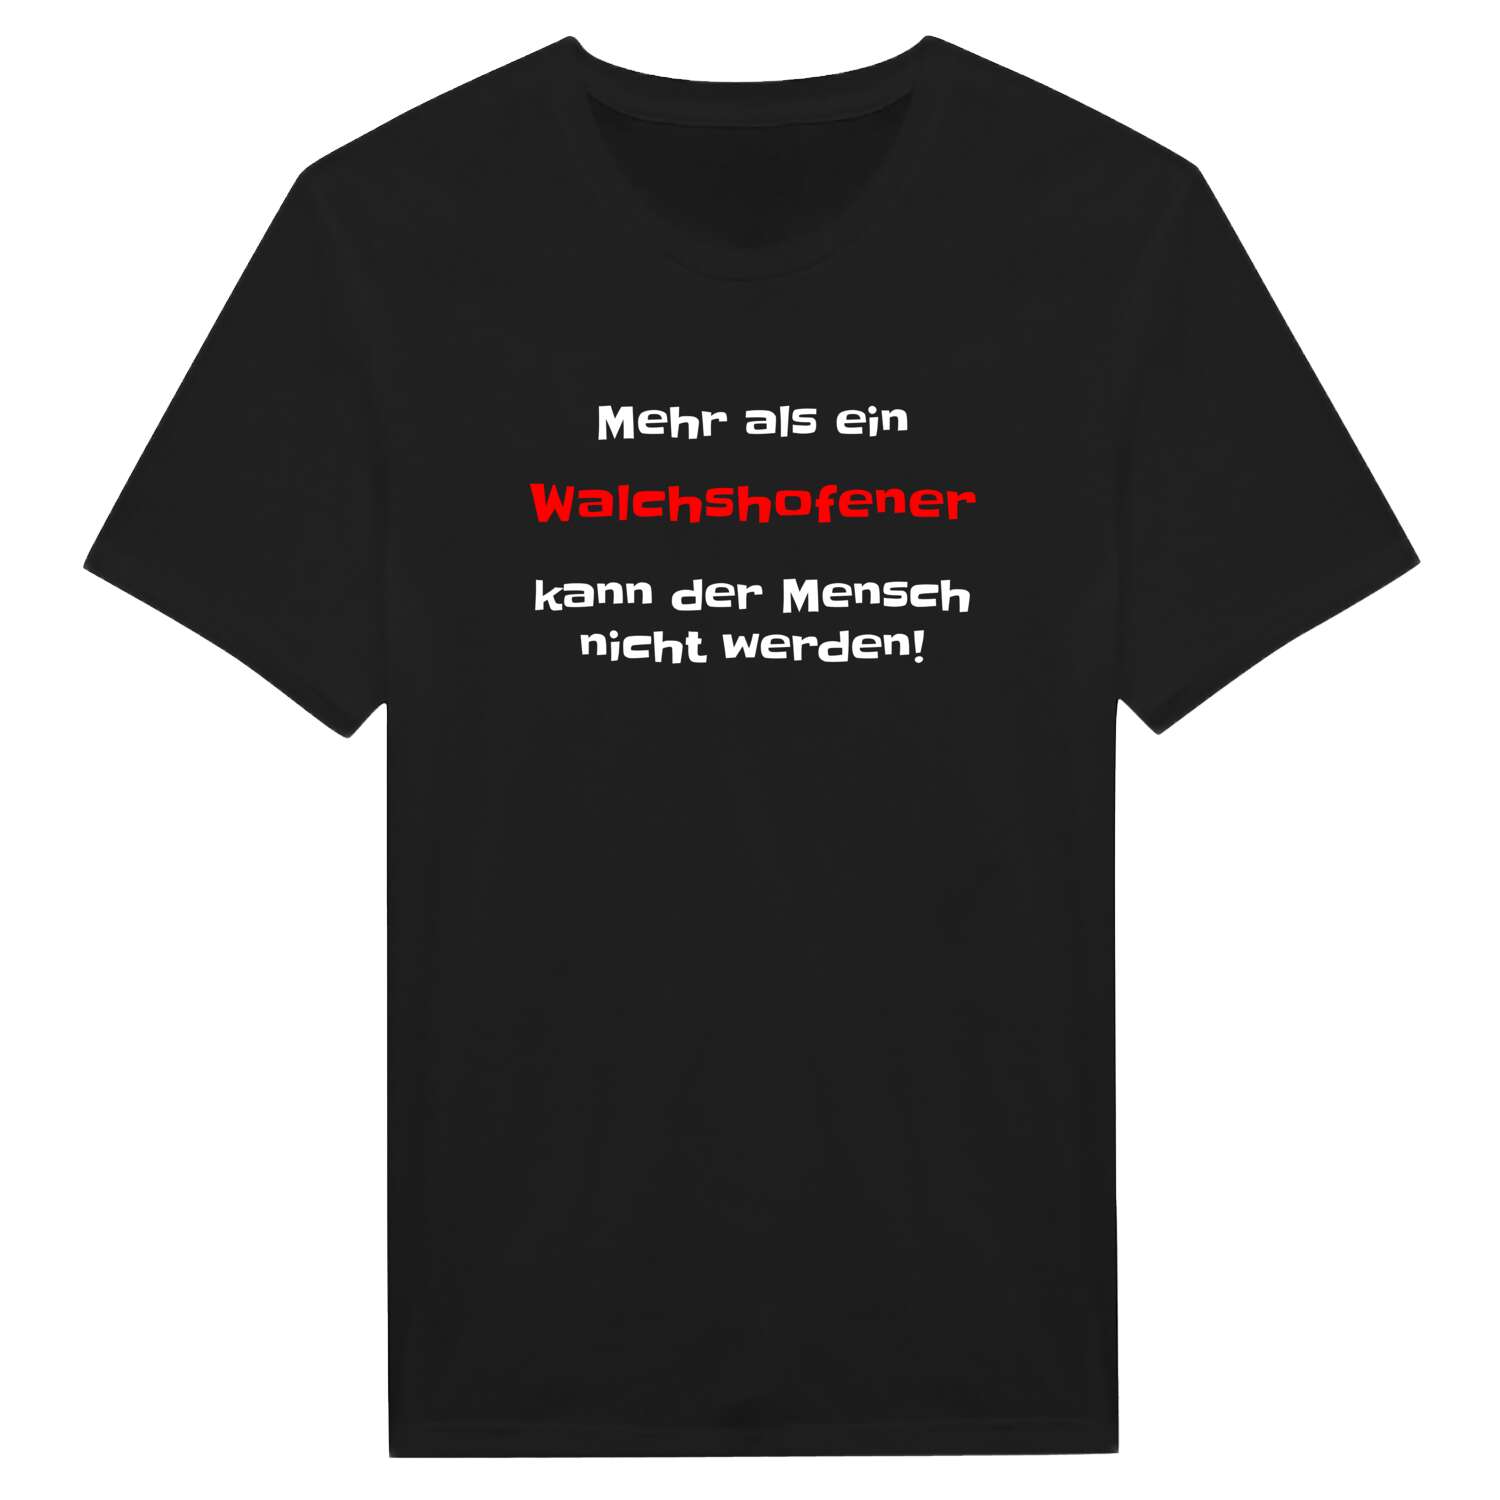 Walchshofen T-Shirt »Mehr als ein«